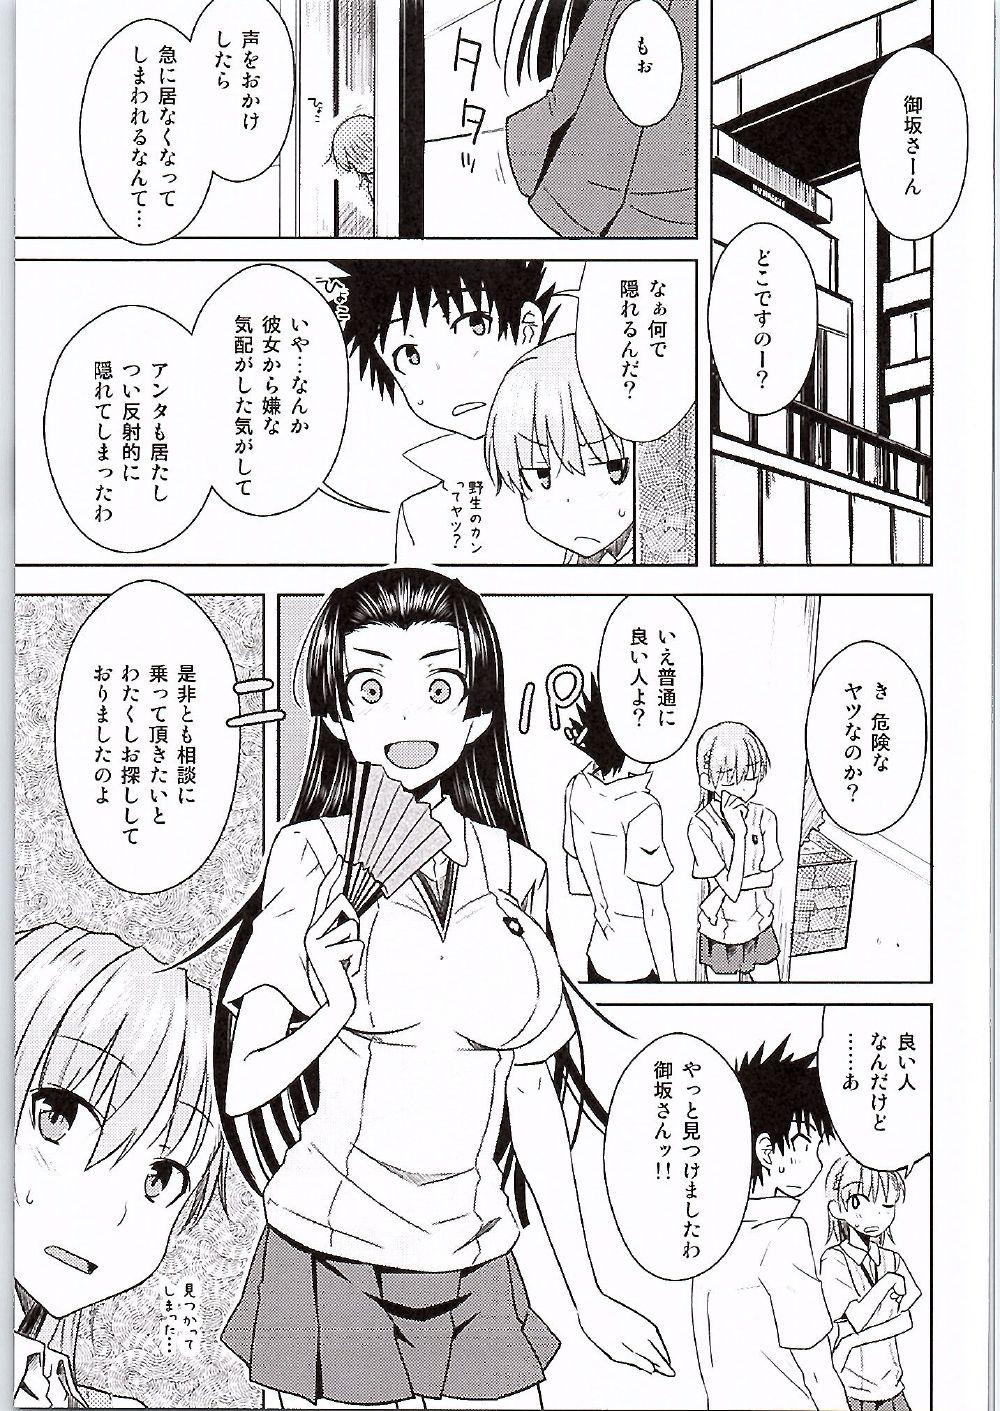 Pick Up BEAUTIFUL SHINE - Toaru kagaku no railgun X - Page 4